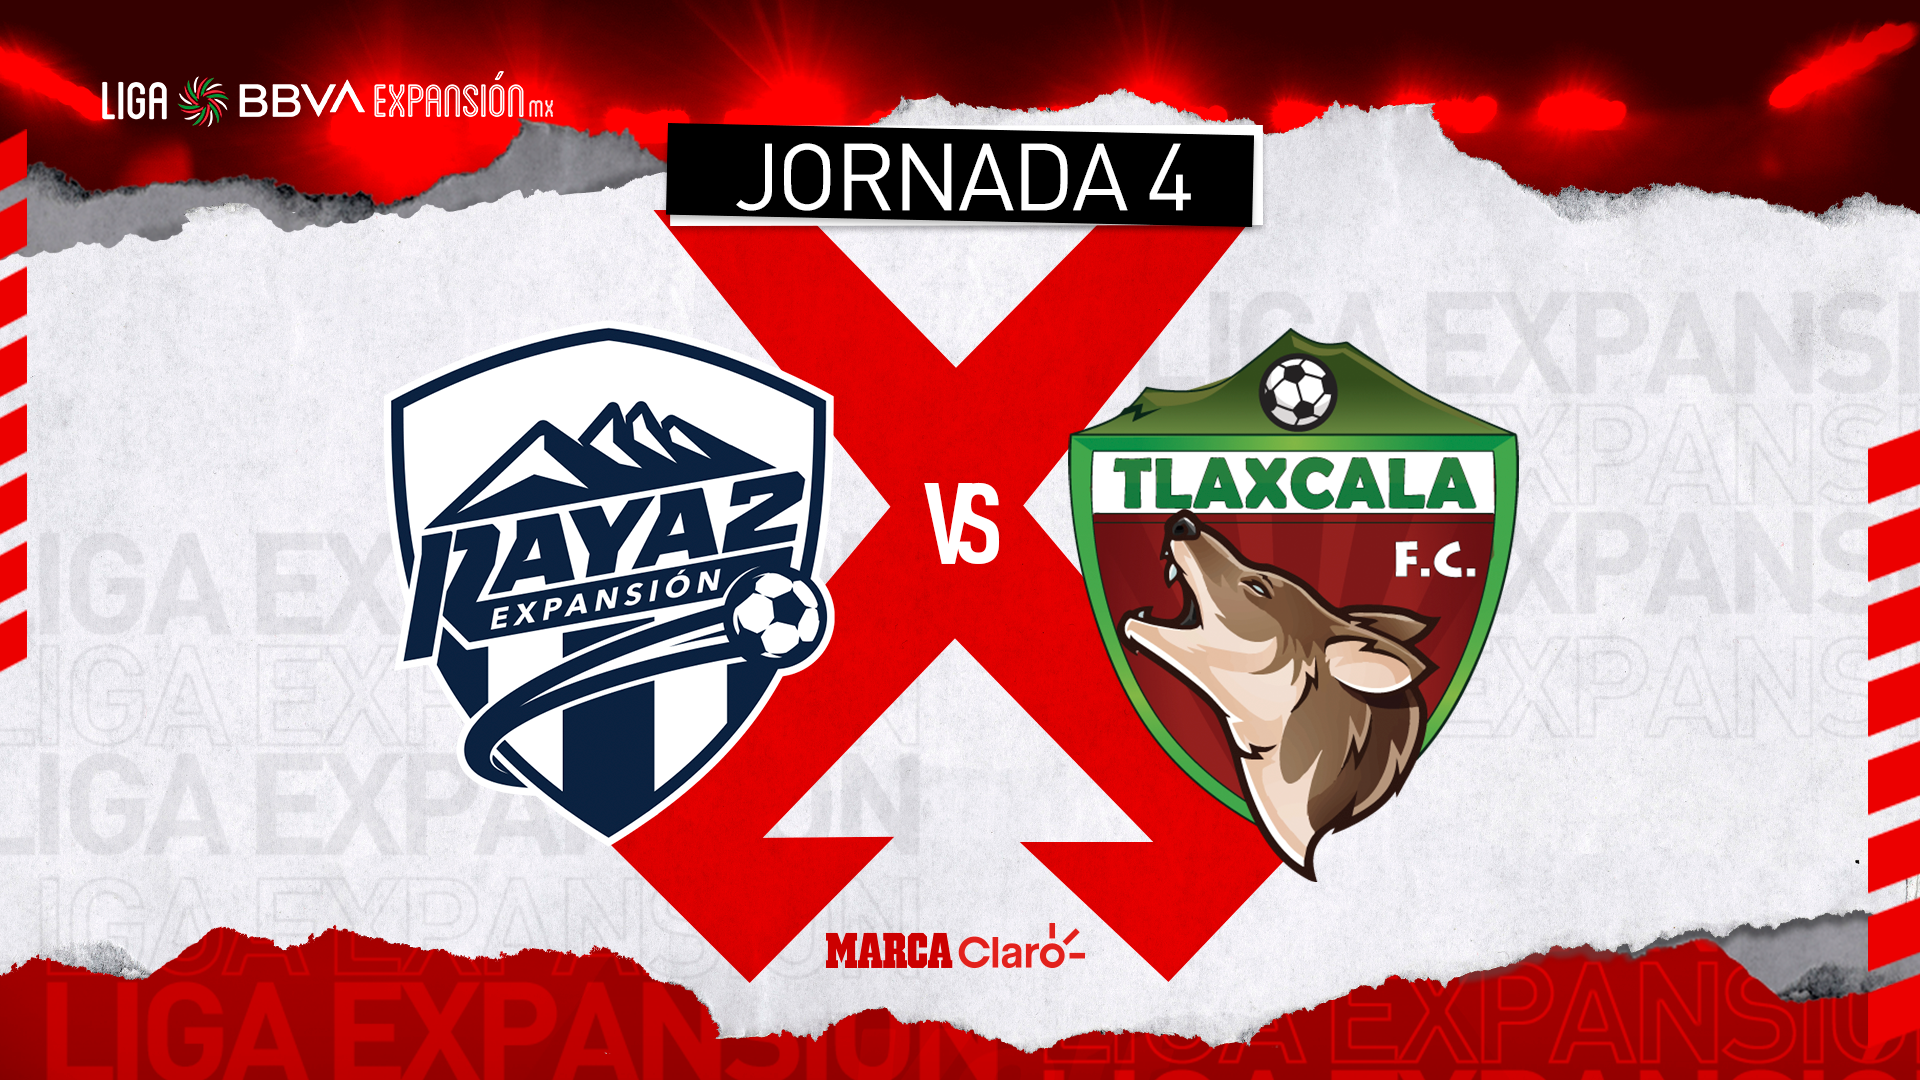 Raya2 vs Tlaxcala FC, en vivo online la transmisión del partido de la Liga Expansión MX